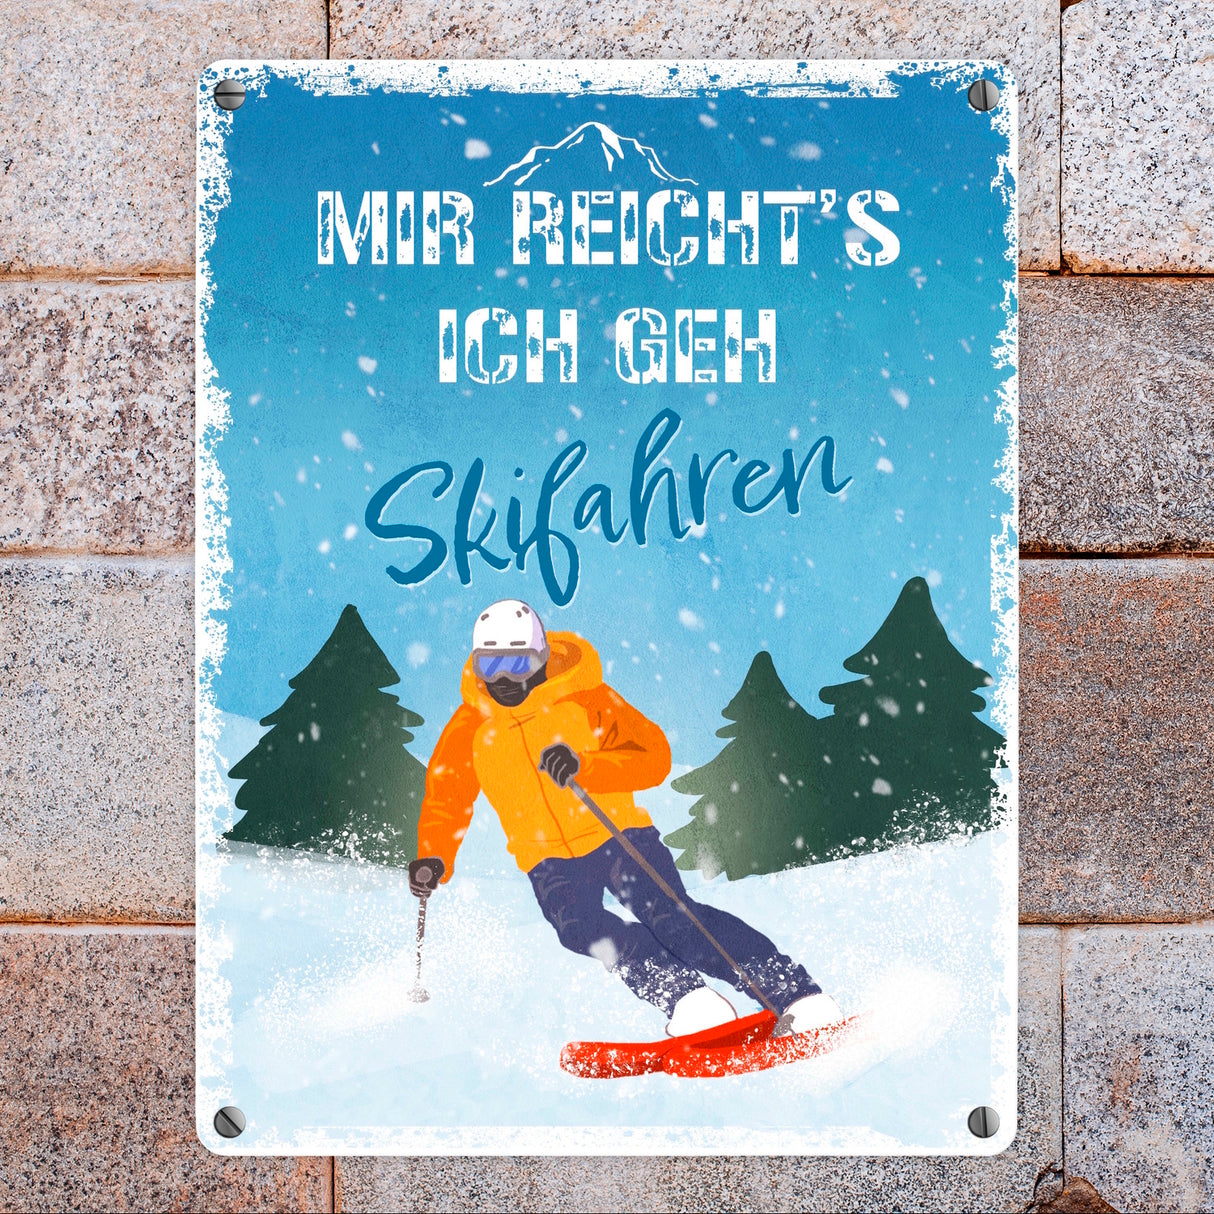 Mir reicht's ich geh Skifahren Metallschild mit Skifahrer-Motiv